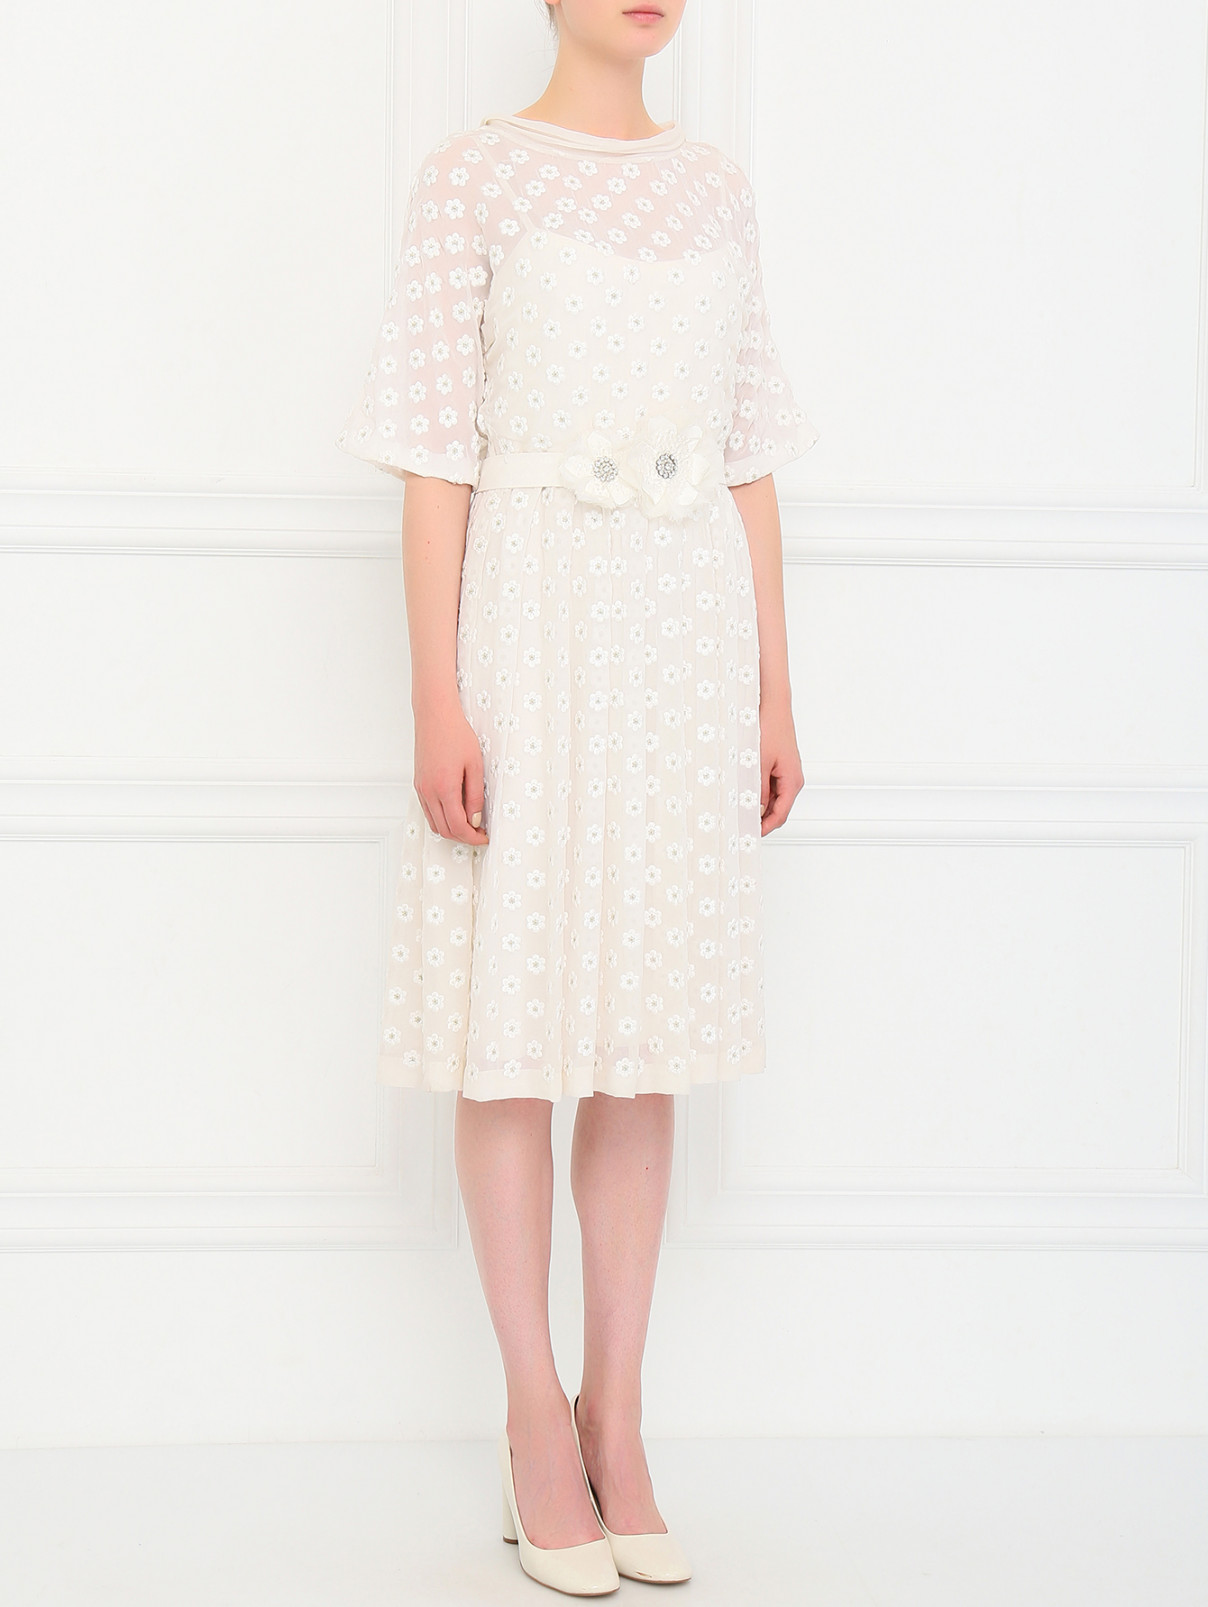 Платье из шелка с вышивкой Collette Dinnigan  –  Модель Общий вид  – Цвет:  Белый